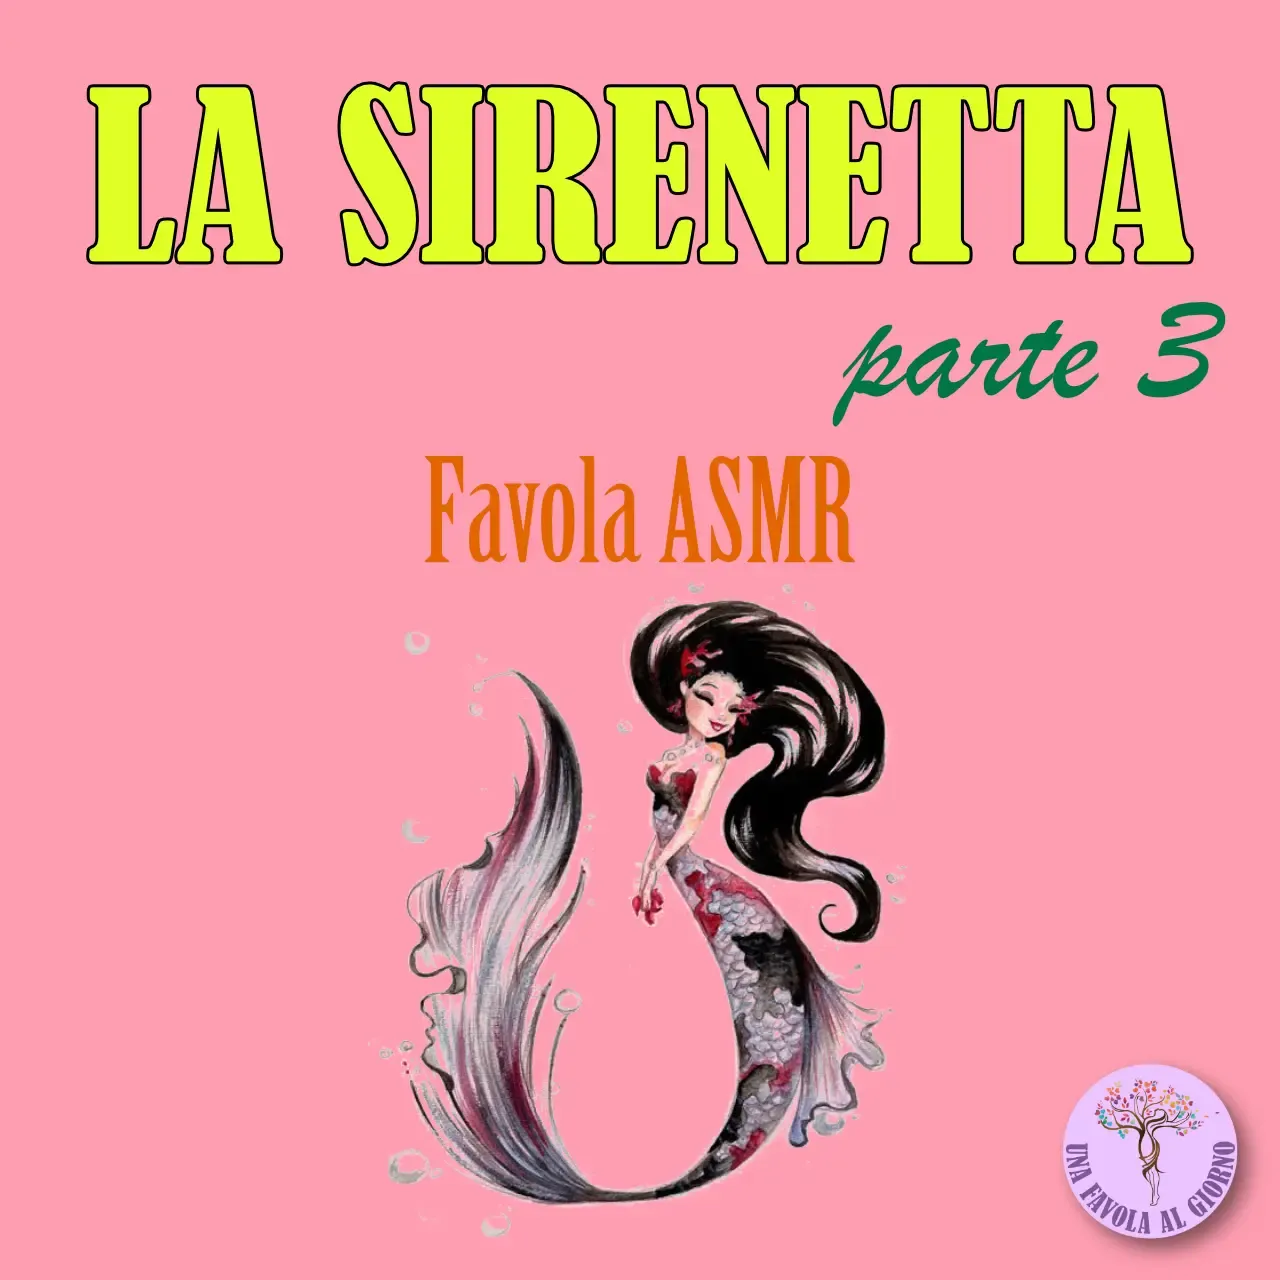 La Sirenetta - parte 3